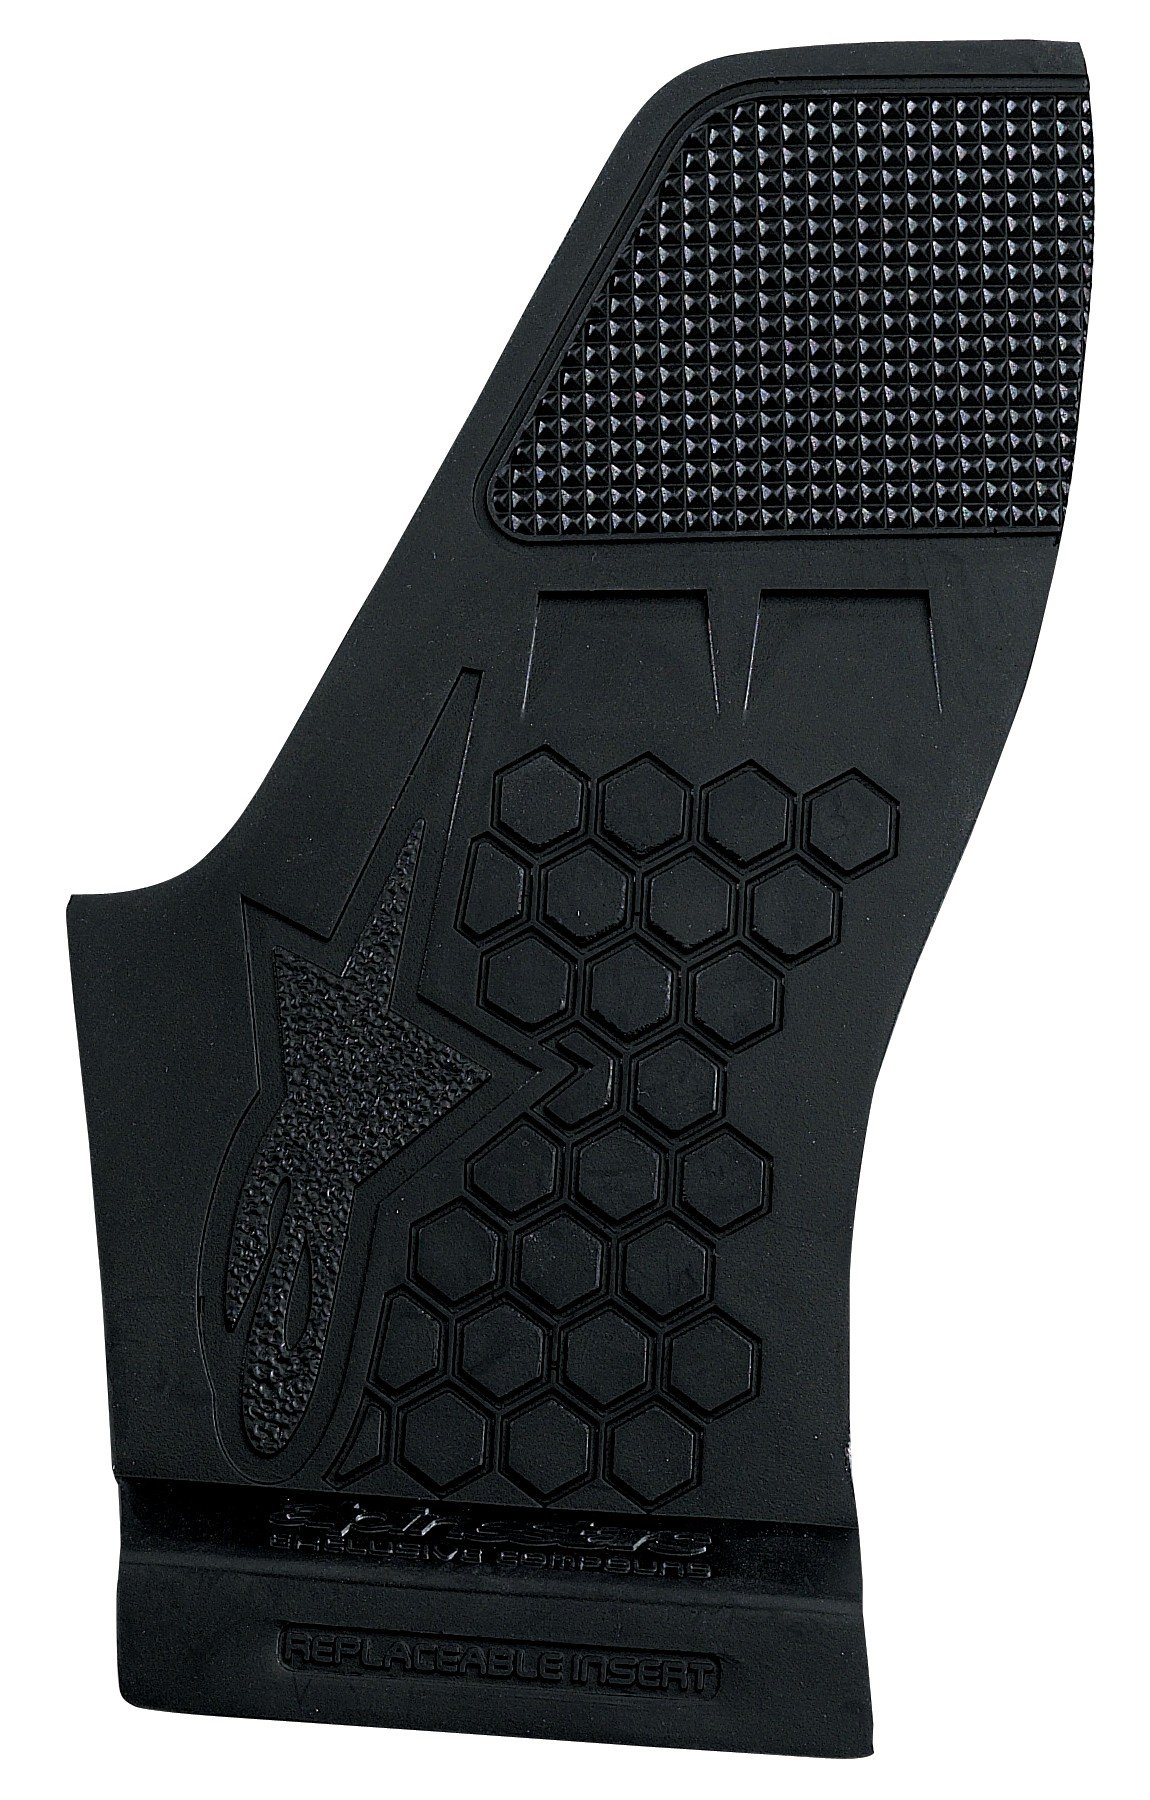 Obrázek produktu středy podrážek pro boty TECH8, ALPINESTARS (černá, pár)